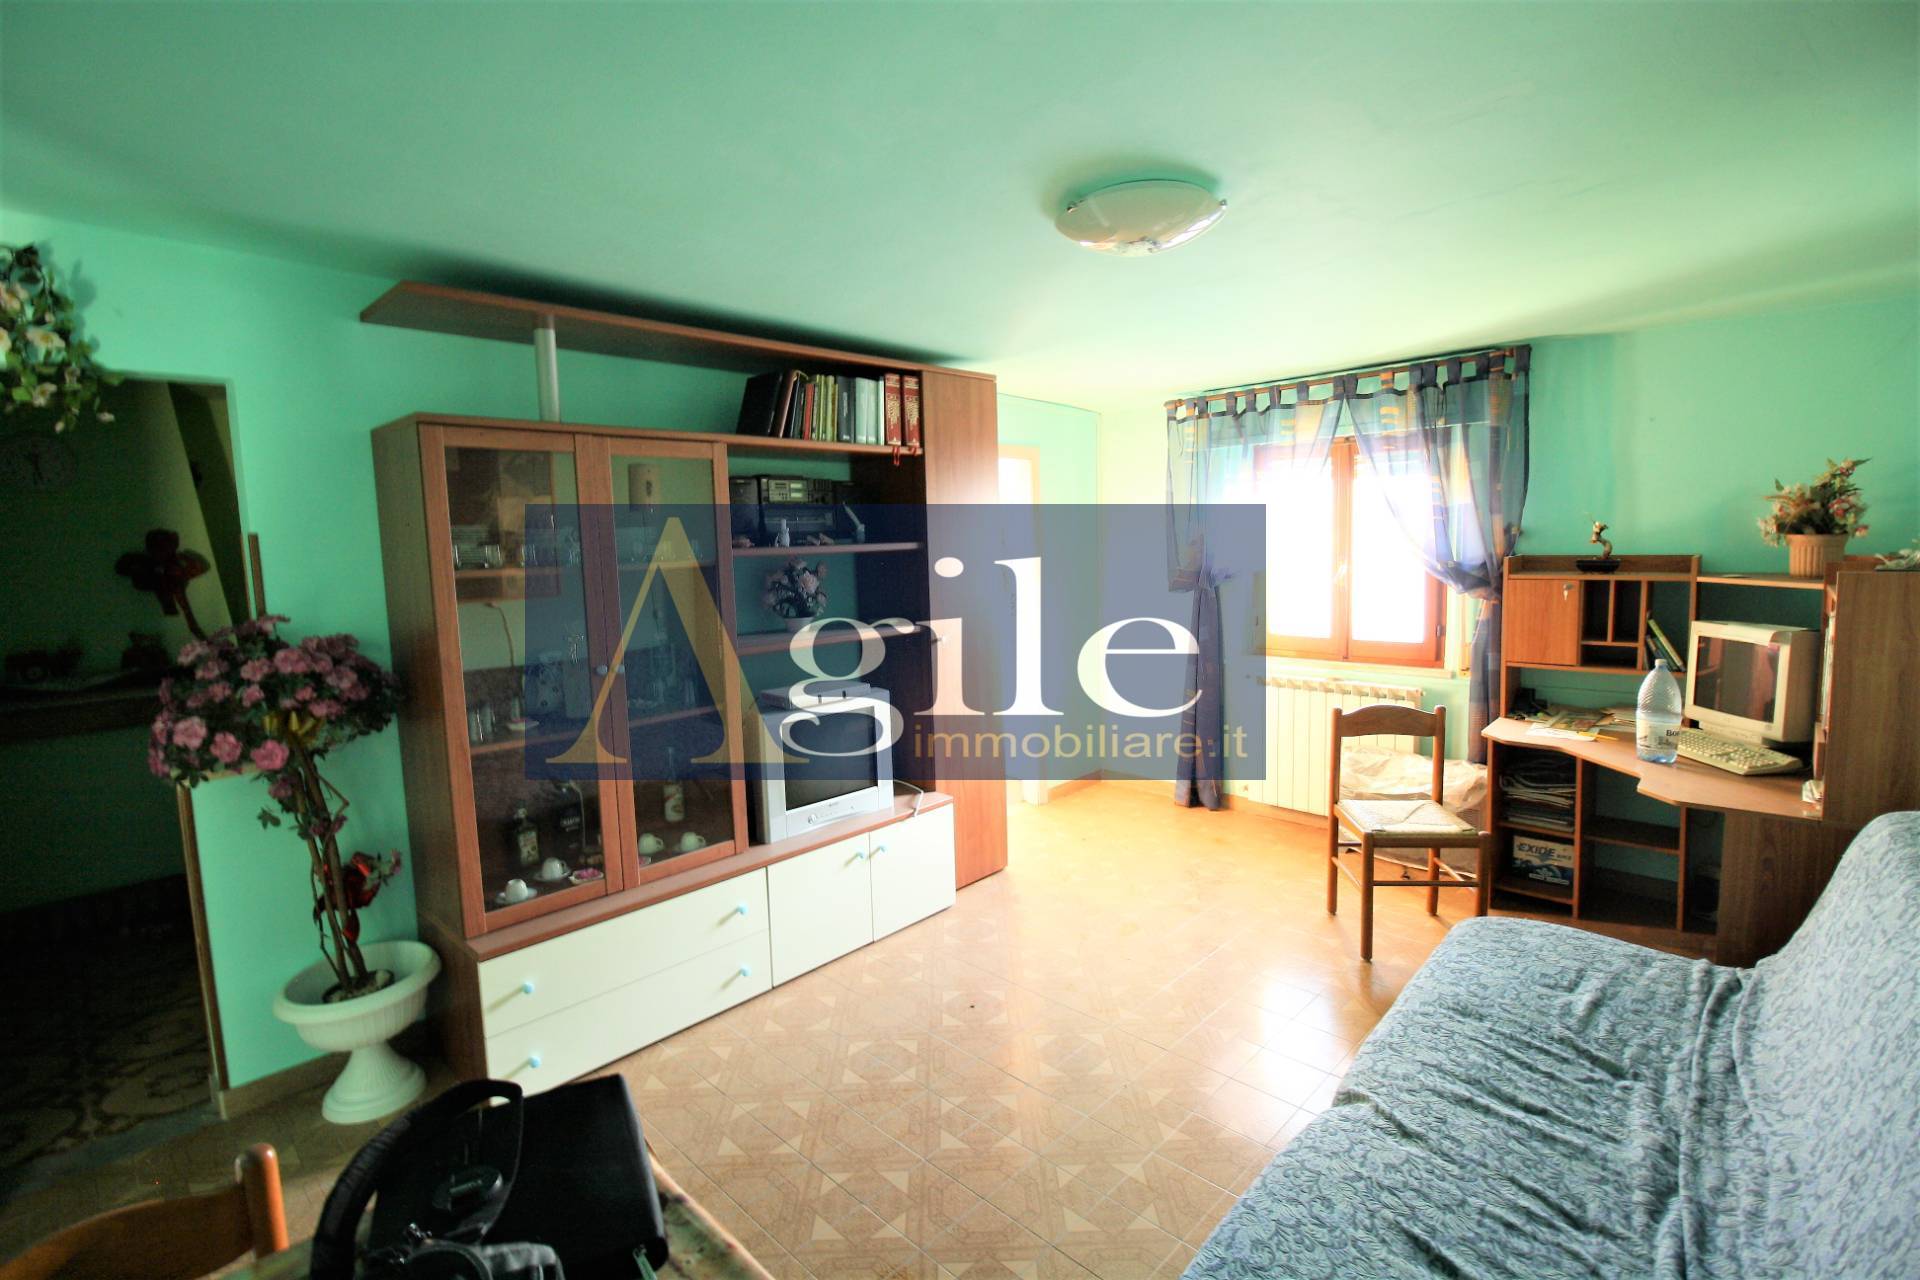 Appartamento in vendita a Colli del Tronto, 4 locali, zona Località: VillaSanGiusepe, prezzo € 53.000 | PortaleAgenzieImmobiliari.it